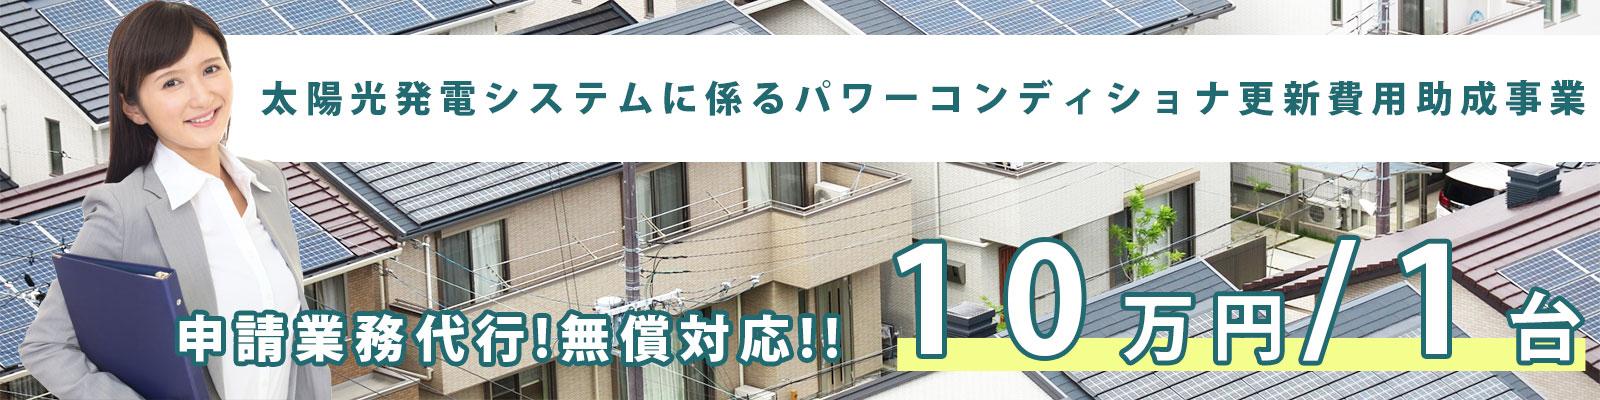 東京都内住宅に対してパワーコンディショナ交換費用に補助金が活用でき